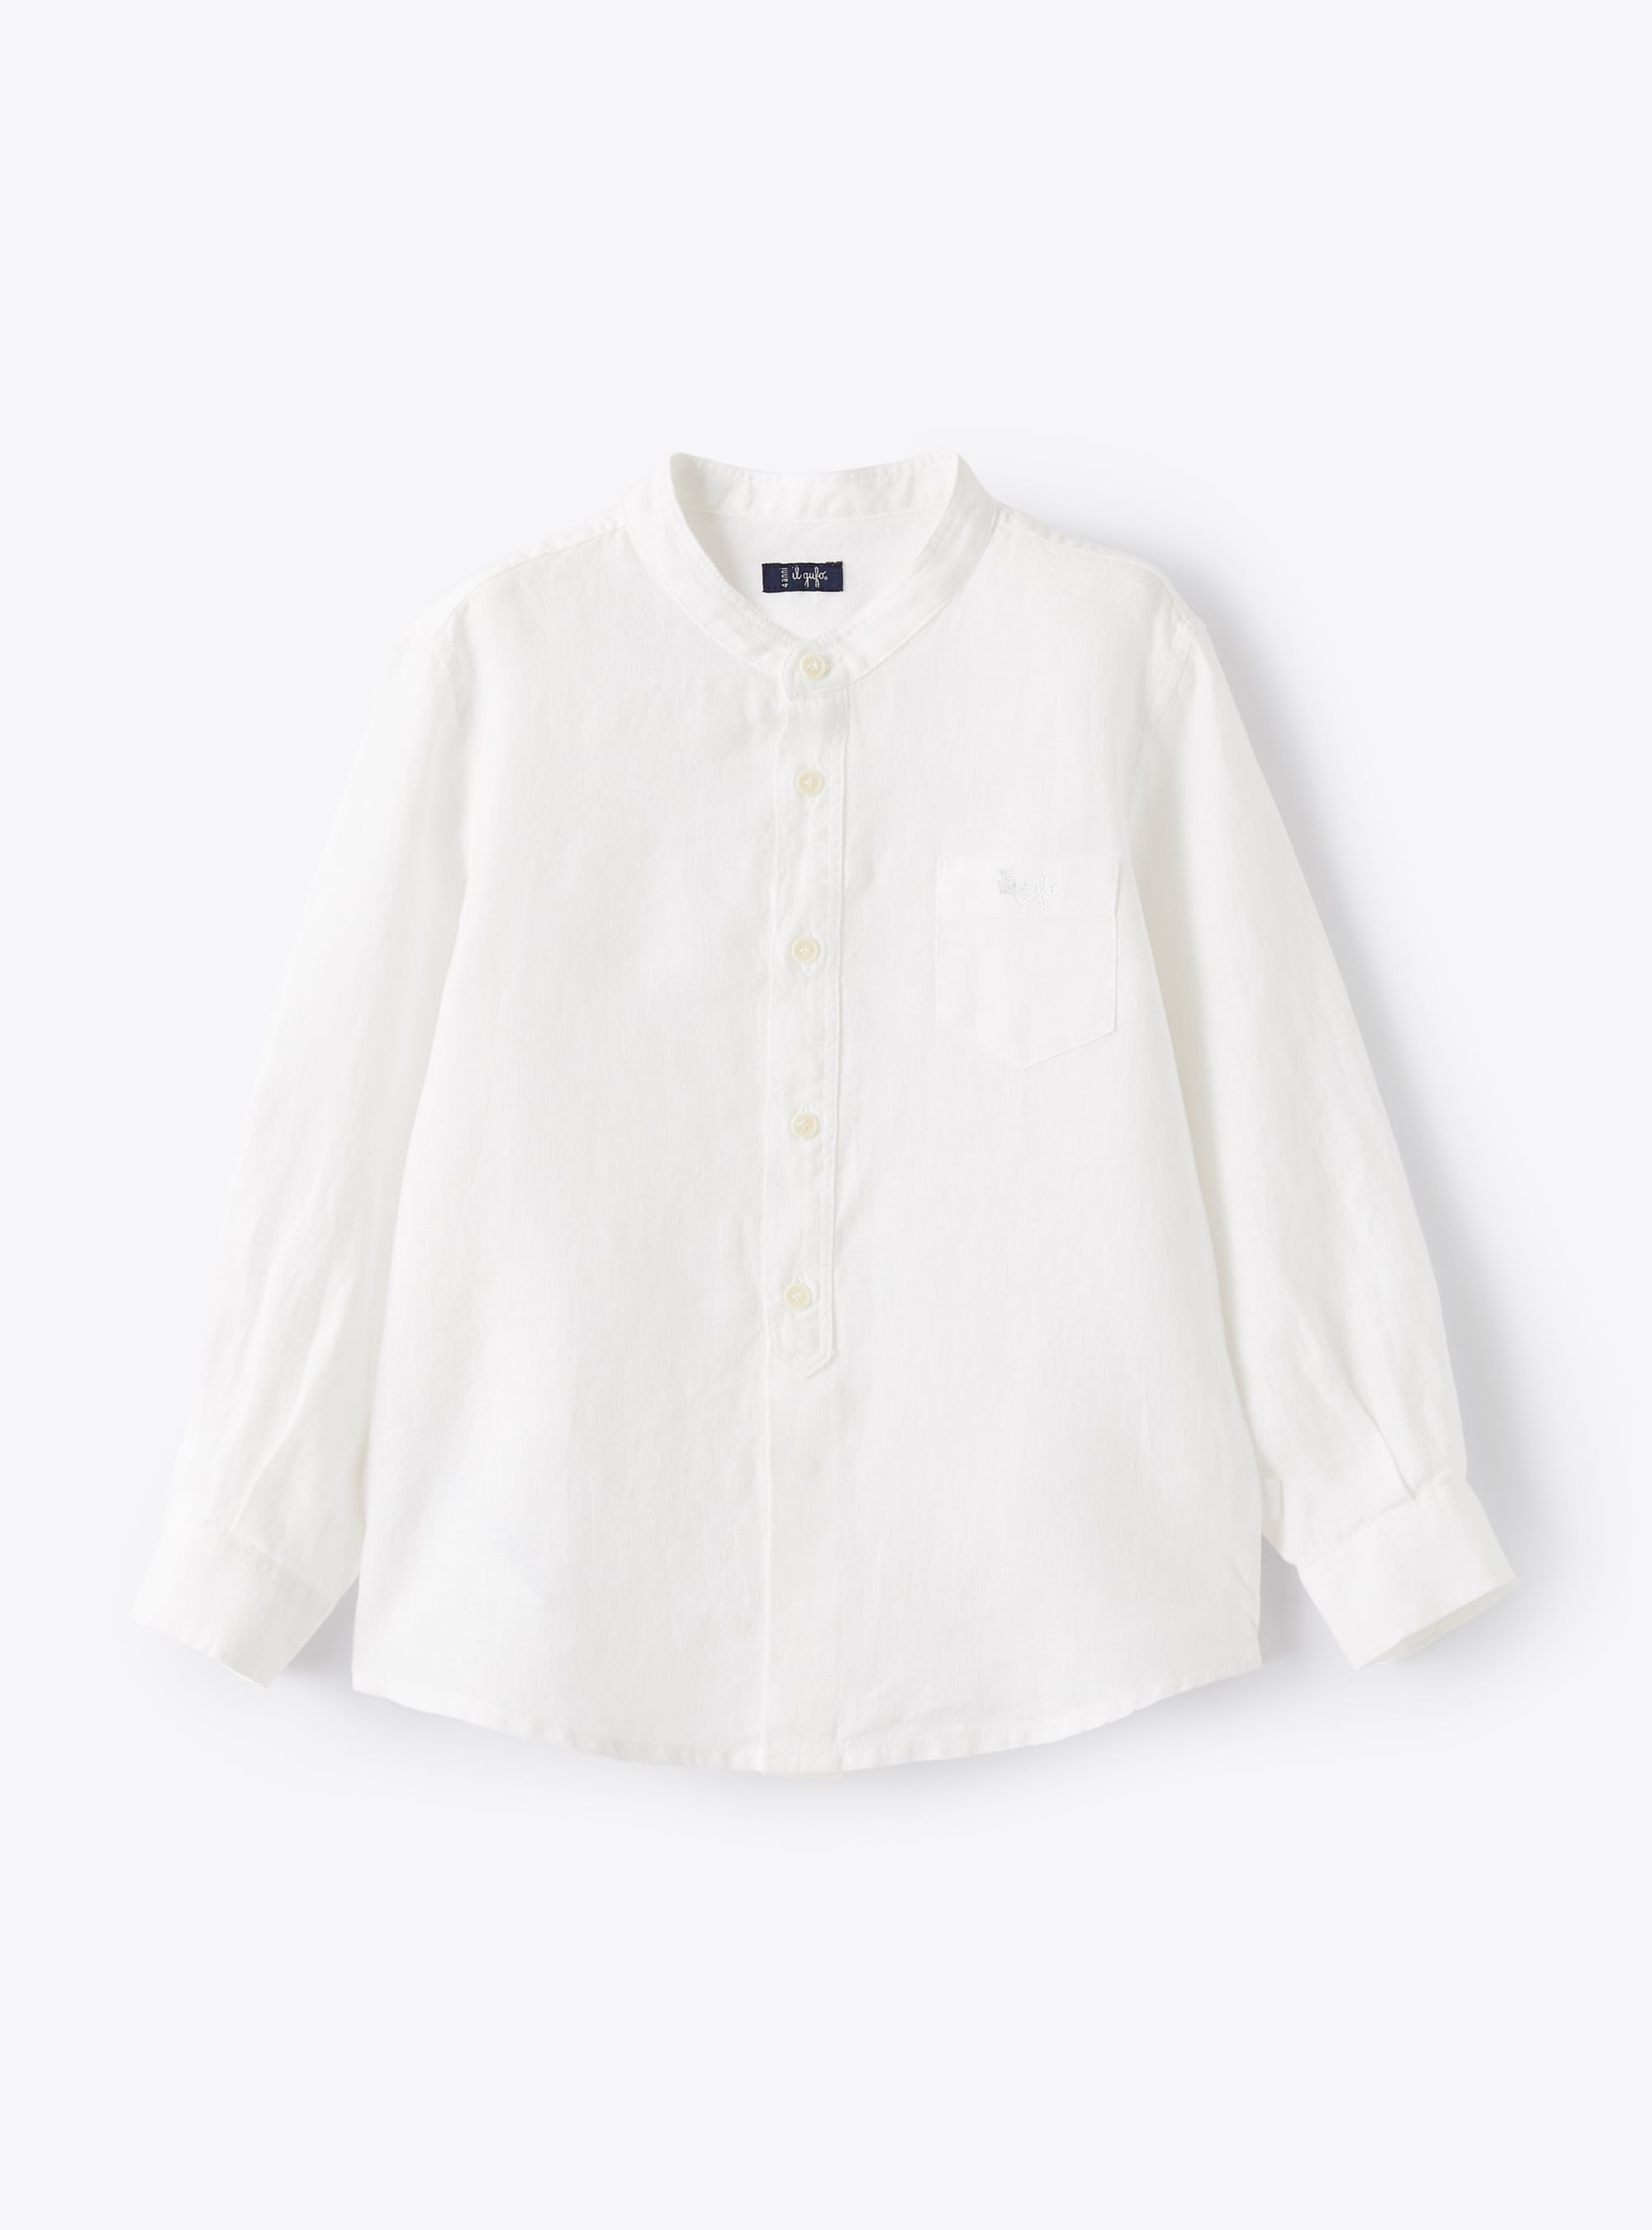 Mandarin-collar shirt in white linen - Shirts - Il Gufo